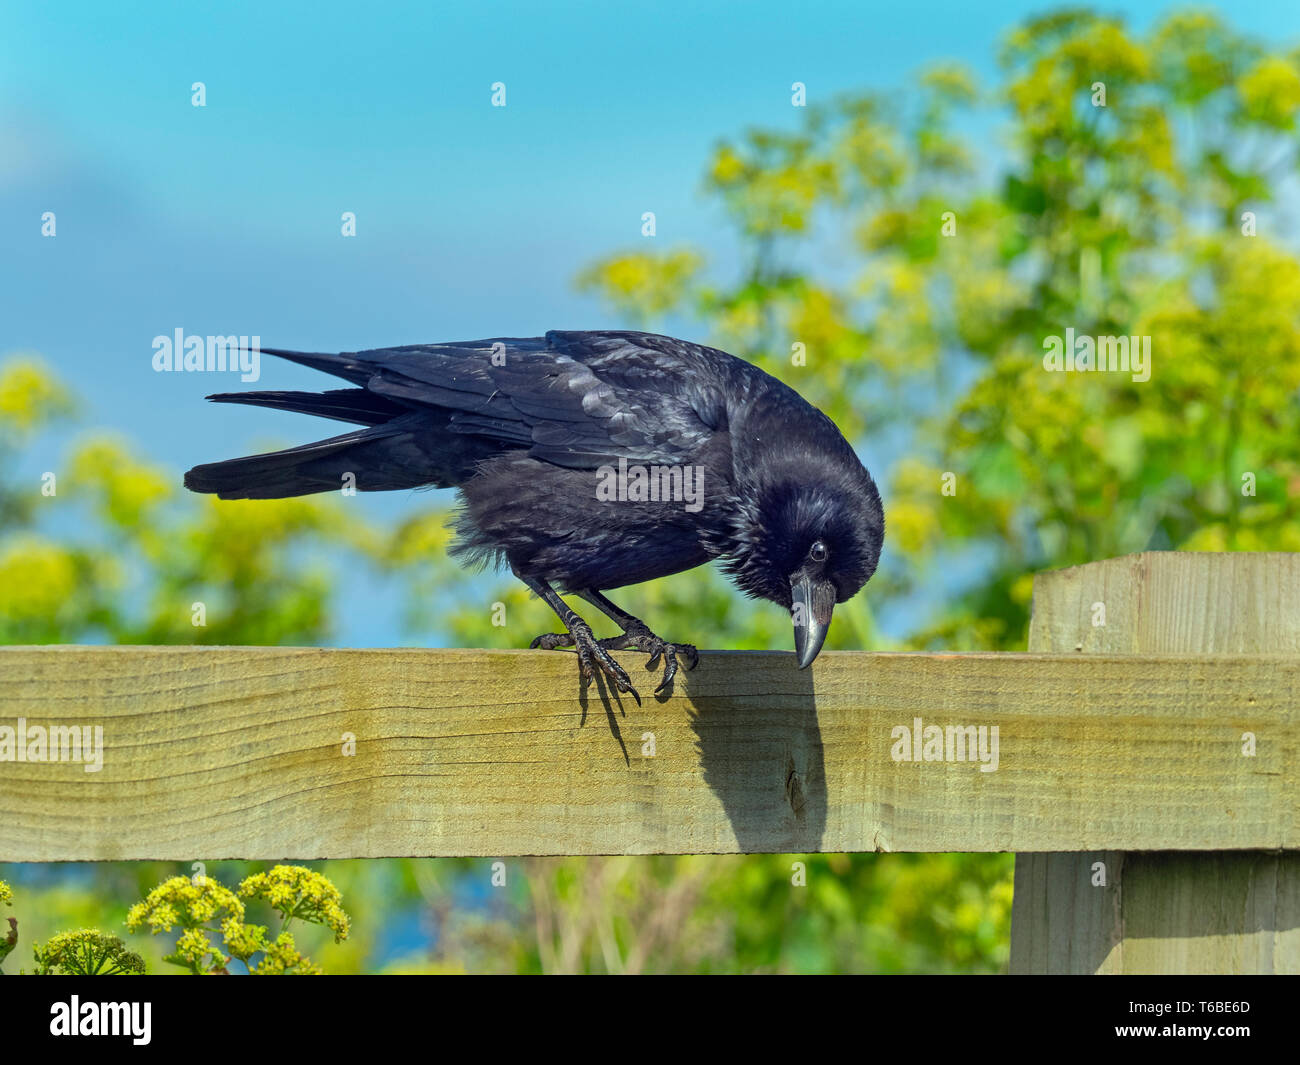 Corneille noire Corvus corone perché sur la clôture du champ Banque D'Images